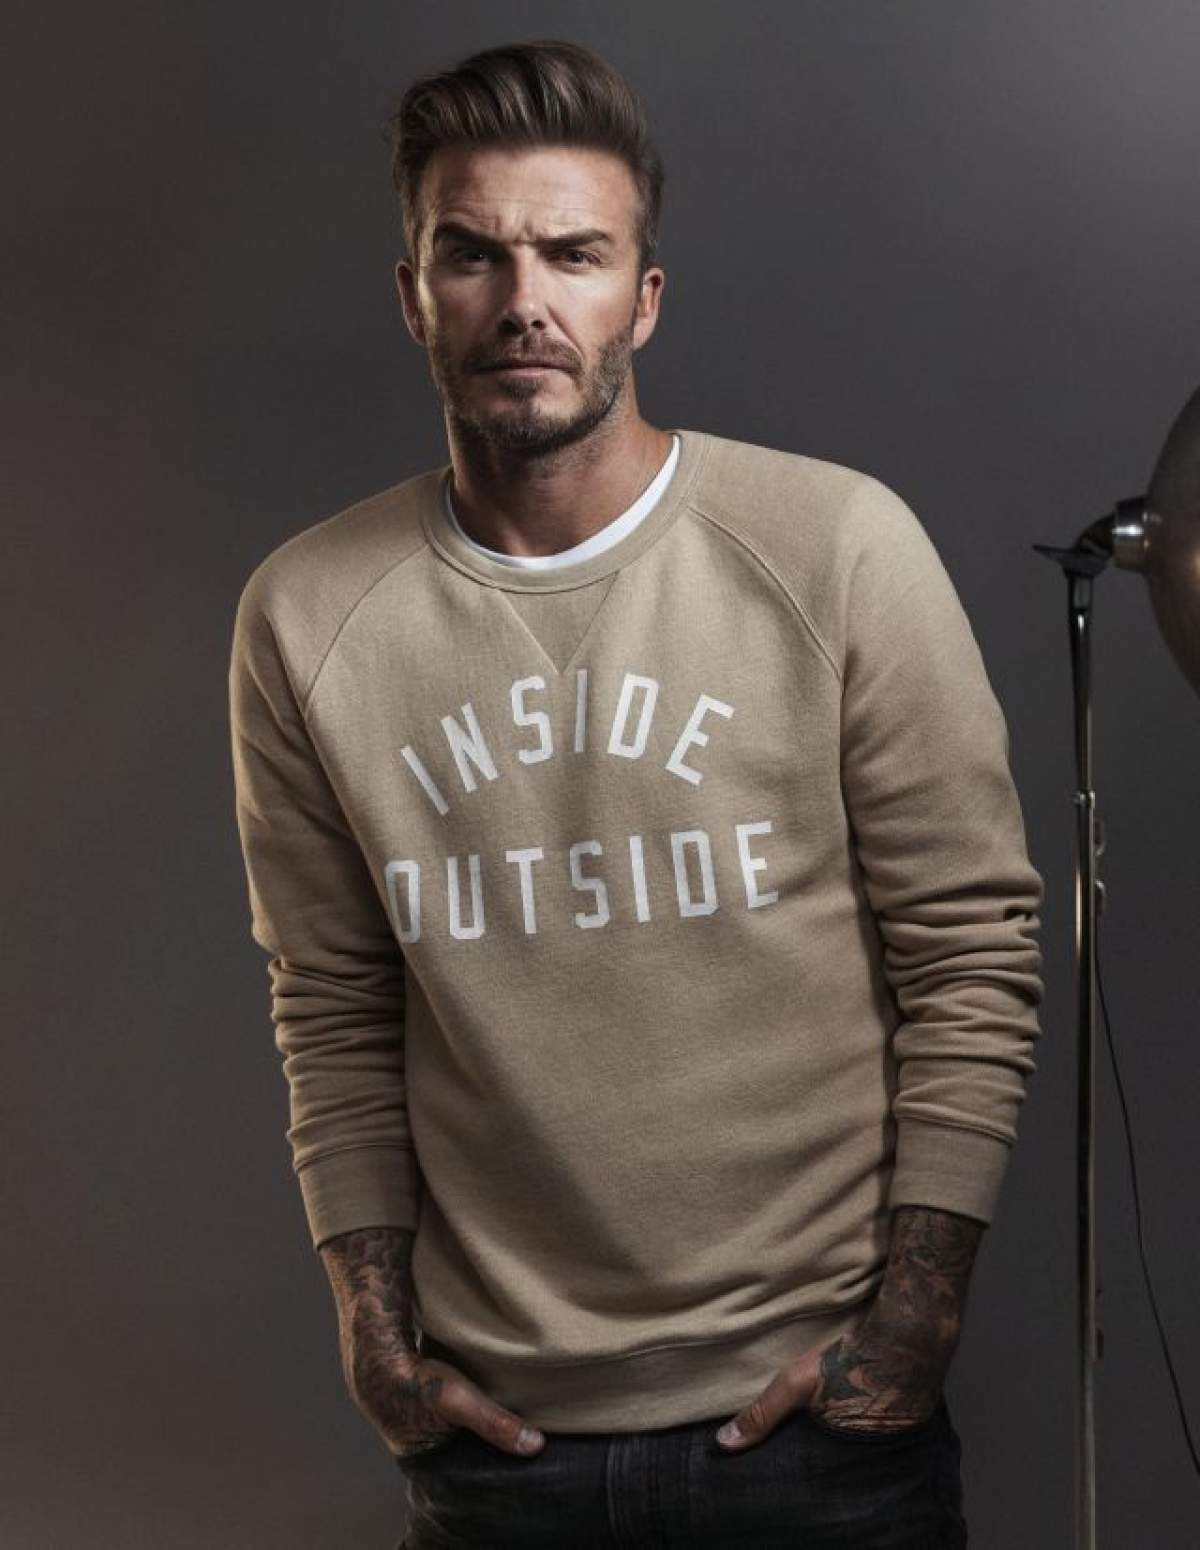 David Beckham, desemnat "Cel mai sexy bărbat în viaţă", de revista People